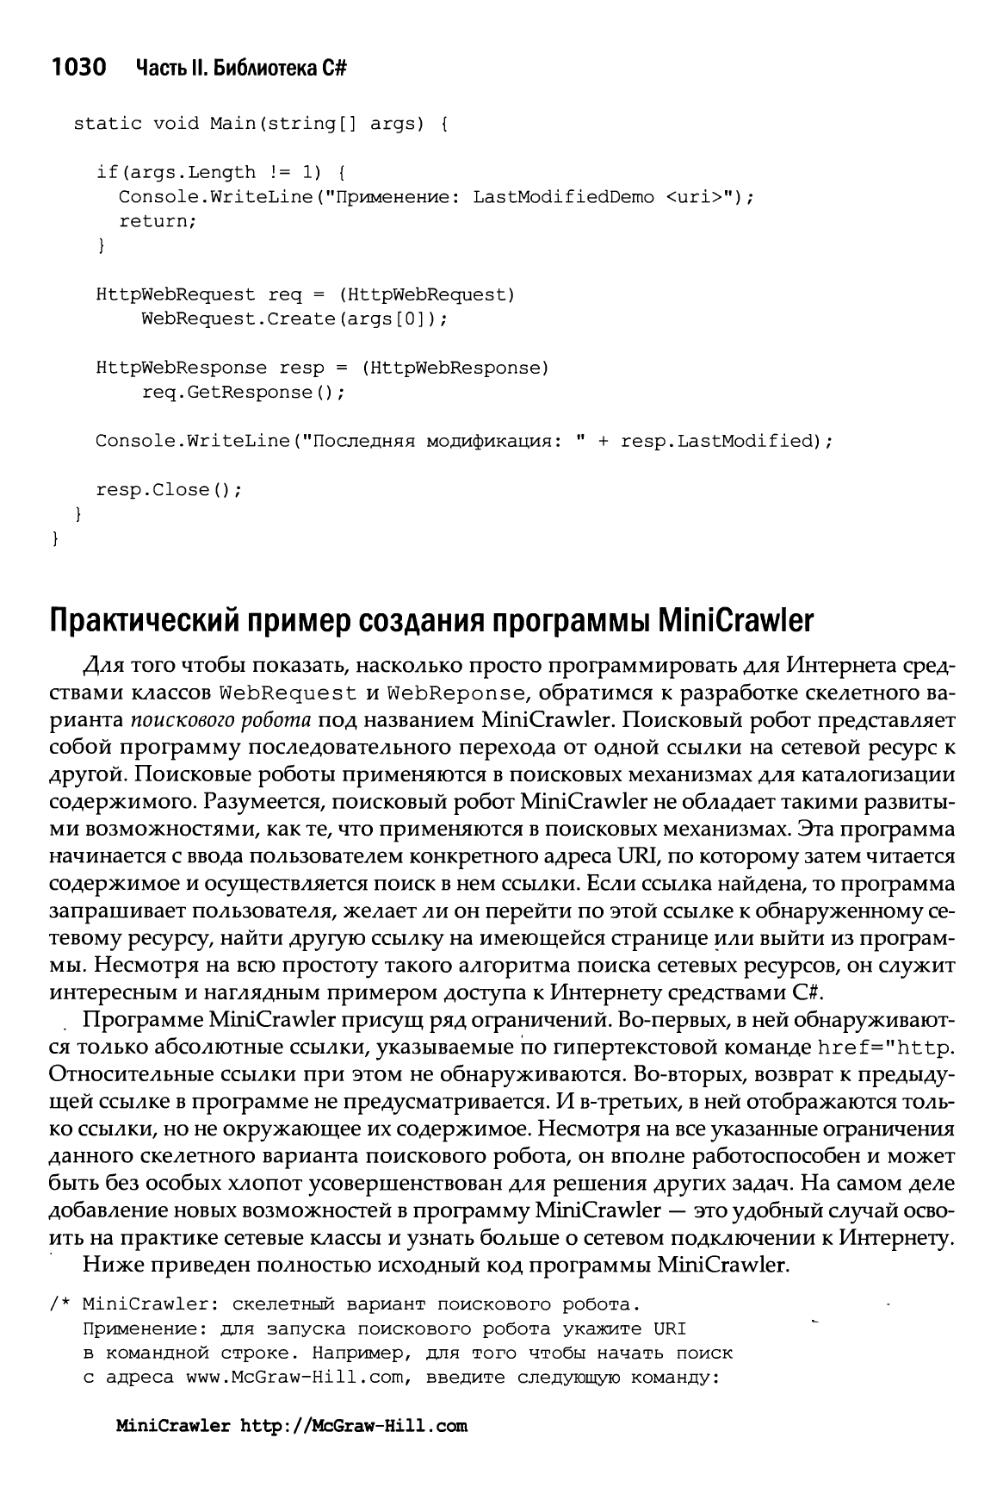 Практический пример создания программы MiniCrawler